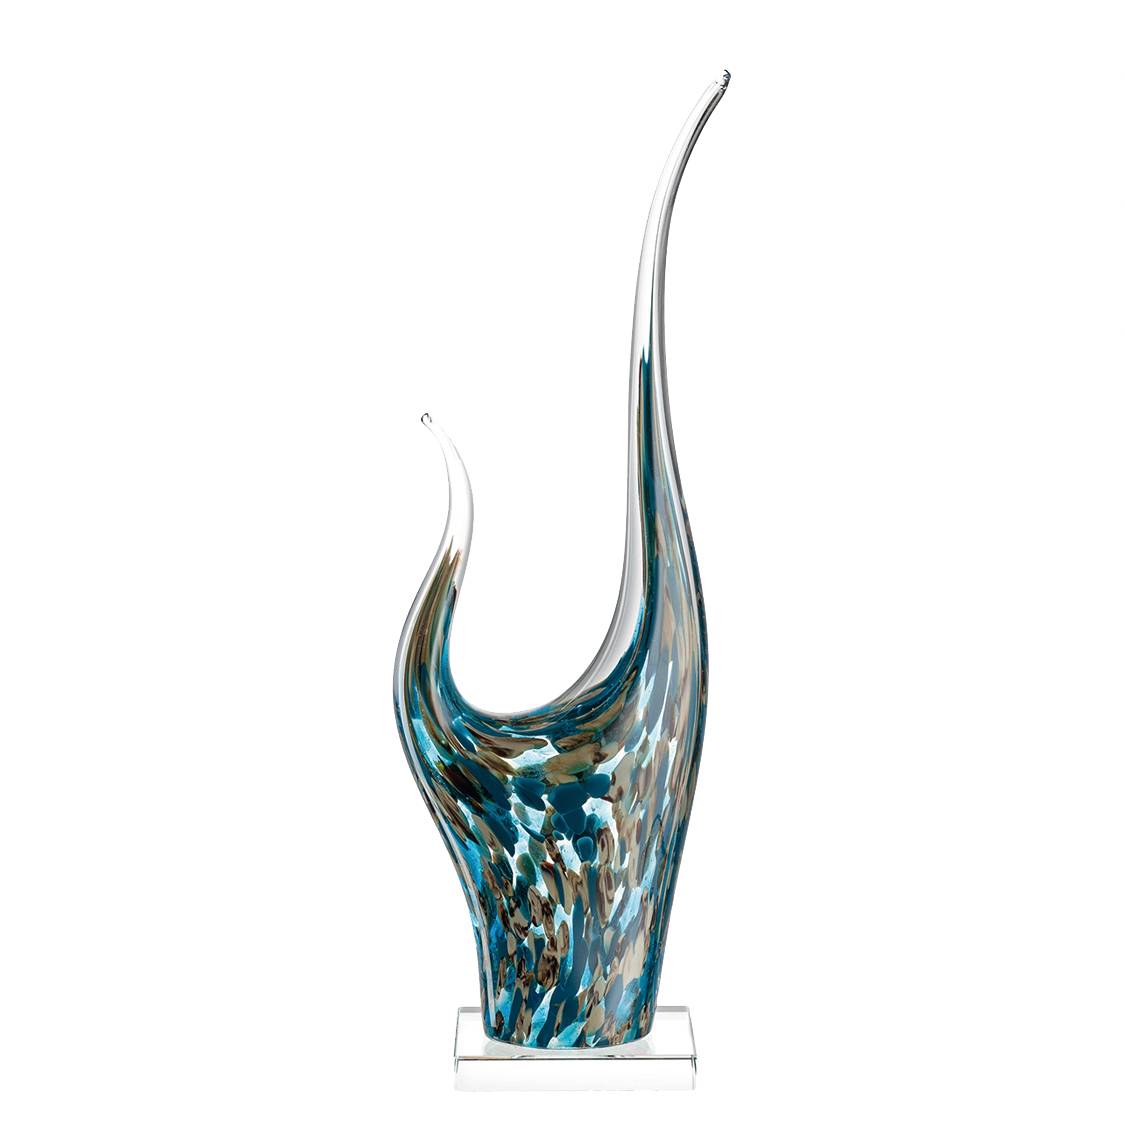 Skulptur Impulso II - Glas - TÃ¼rkis / Braun, Leonardo